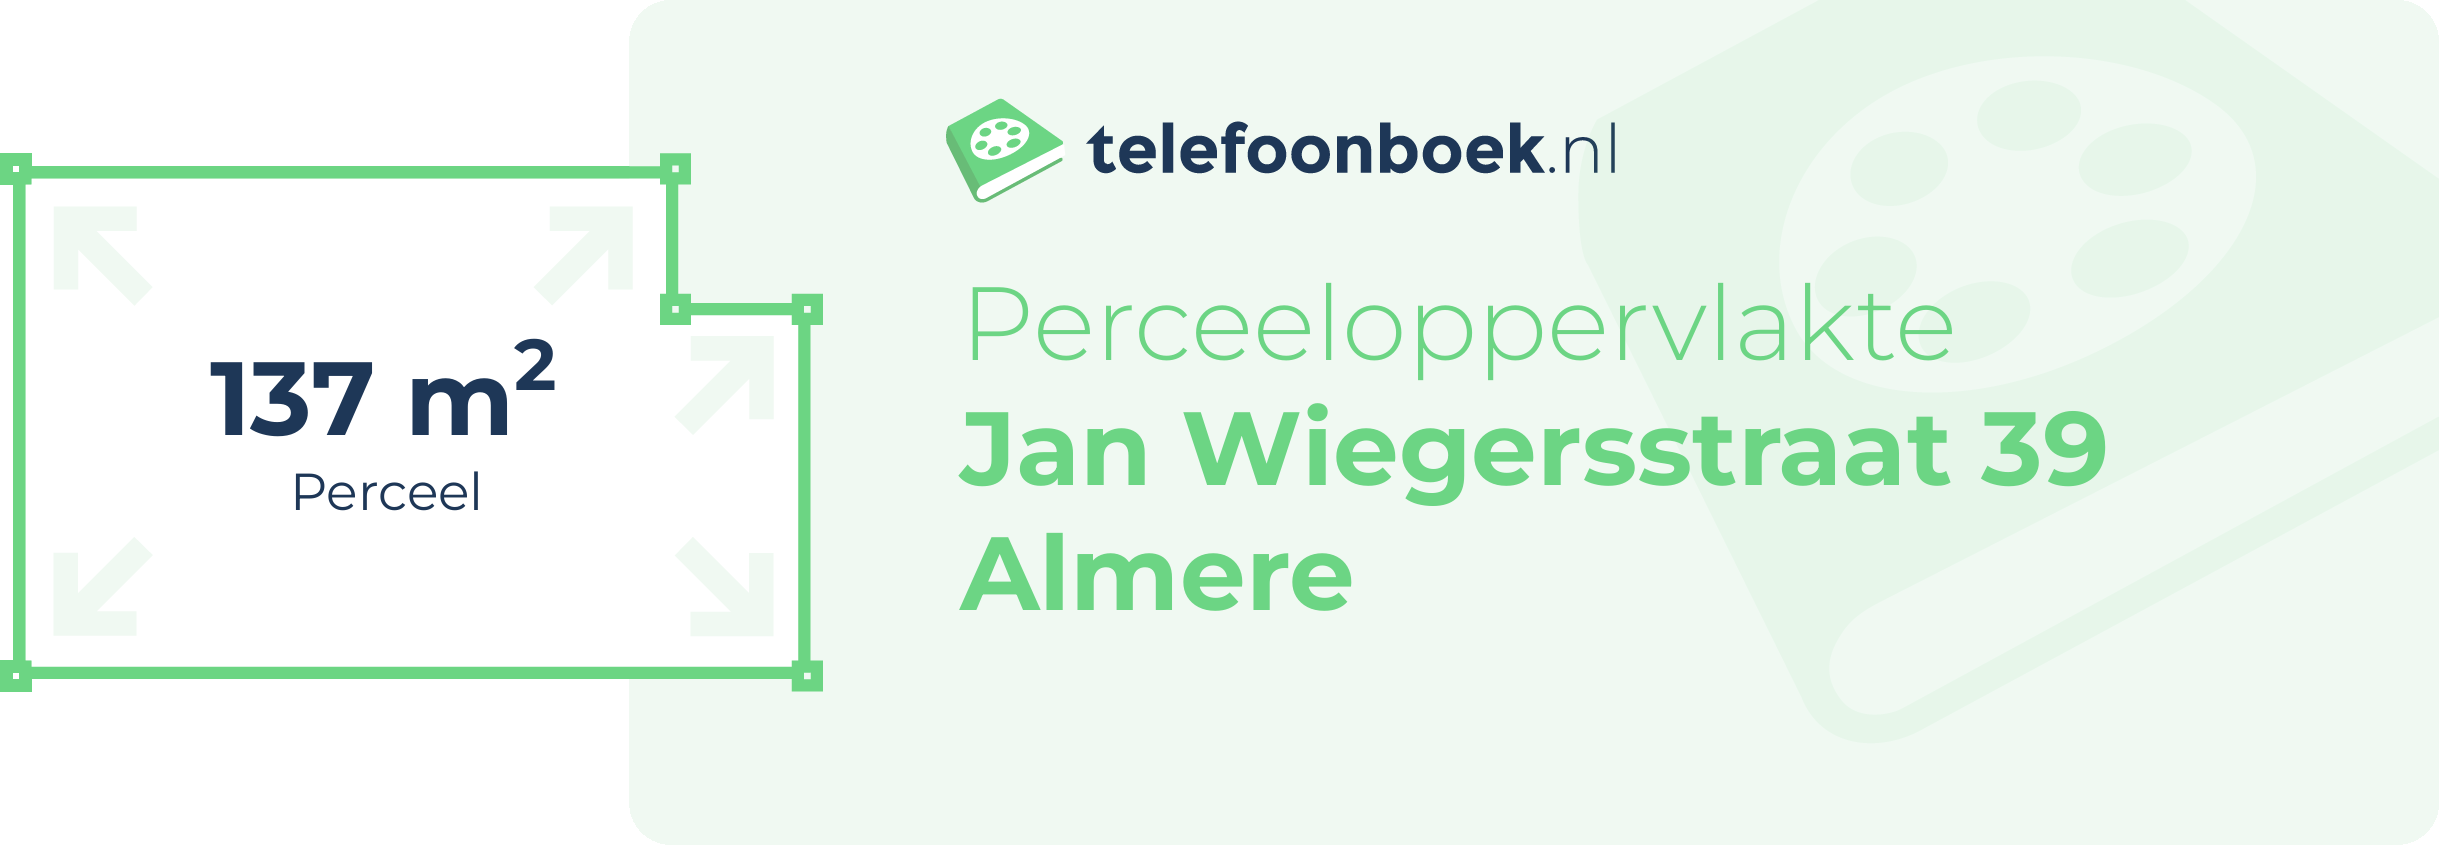 Perceeloppervlakte Jan Wiegersstraat 39 Almere